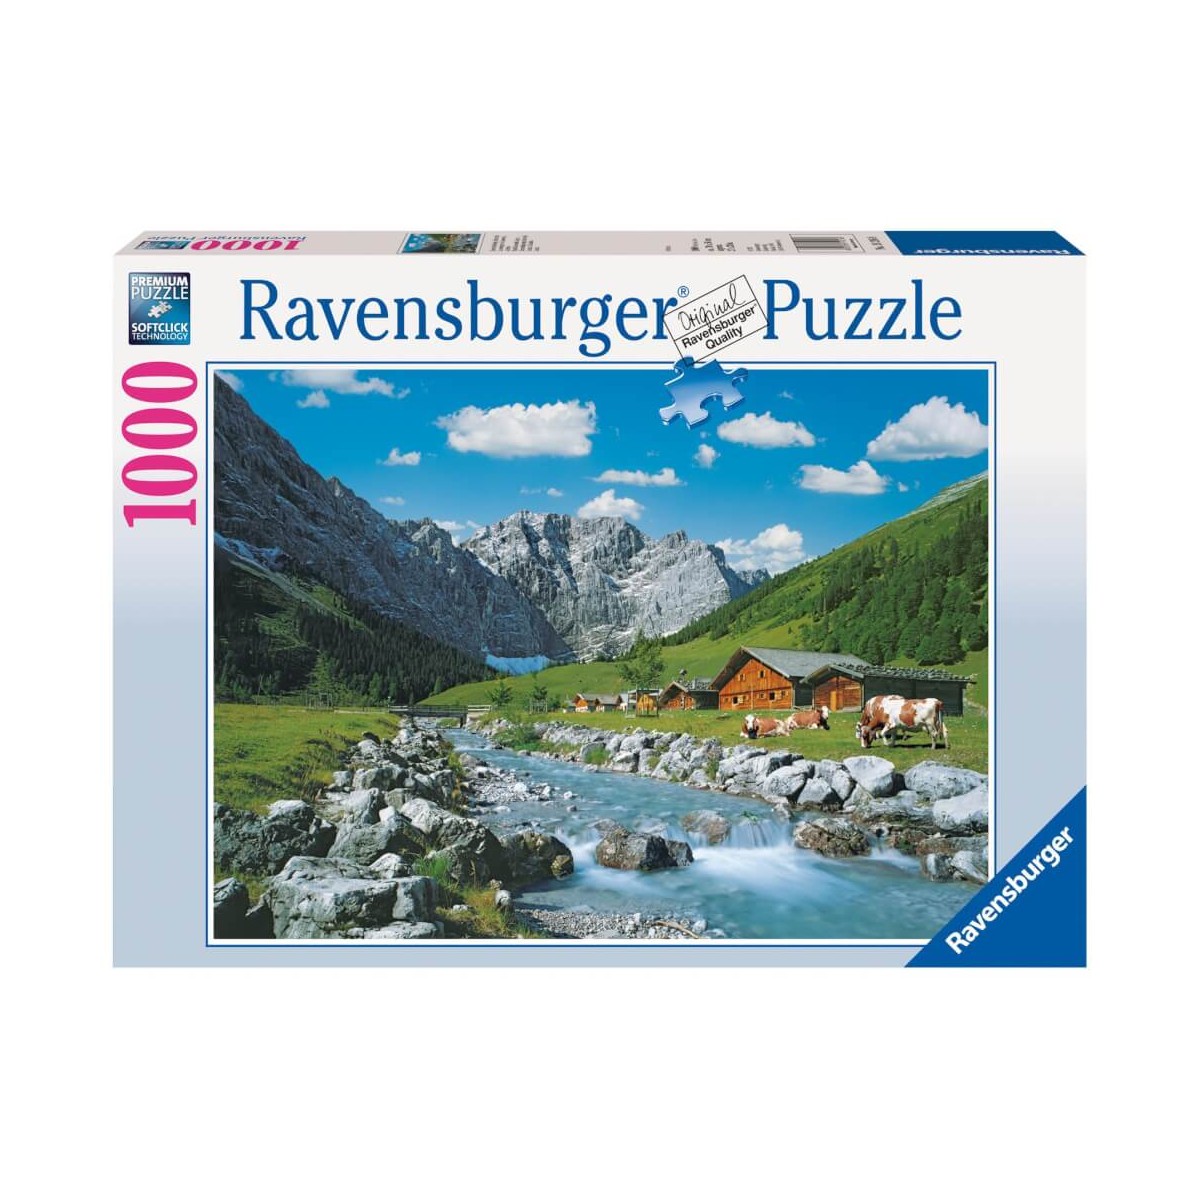 Ravensburger 19216 Puzzle Karwendelgebirge, Österreich 1000 Teile